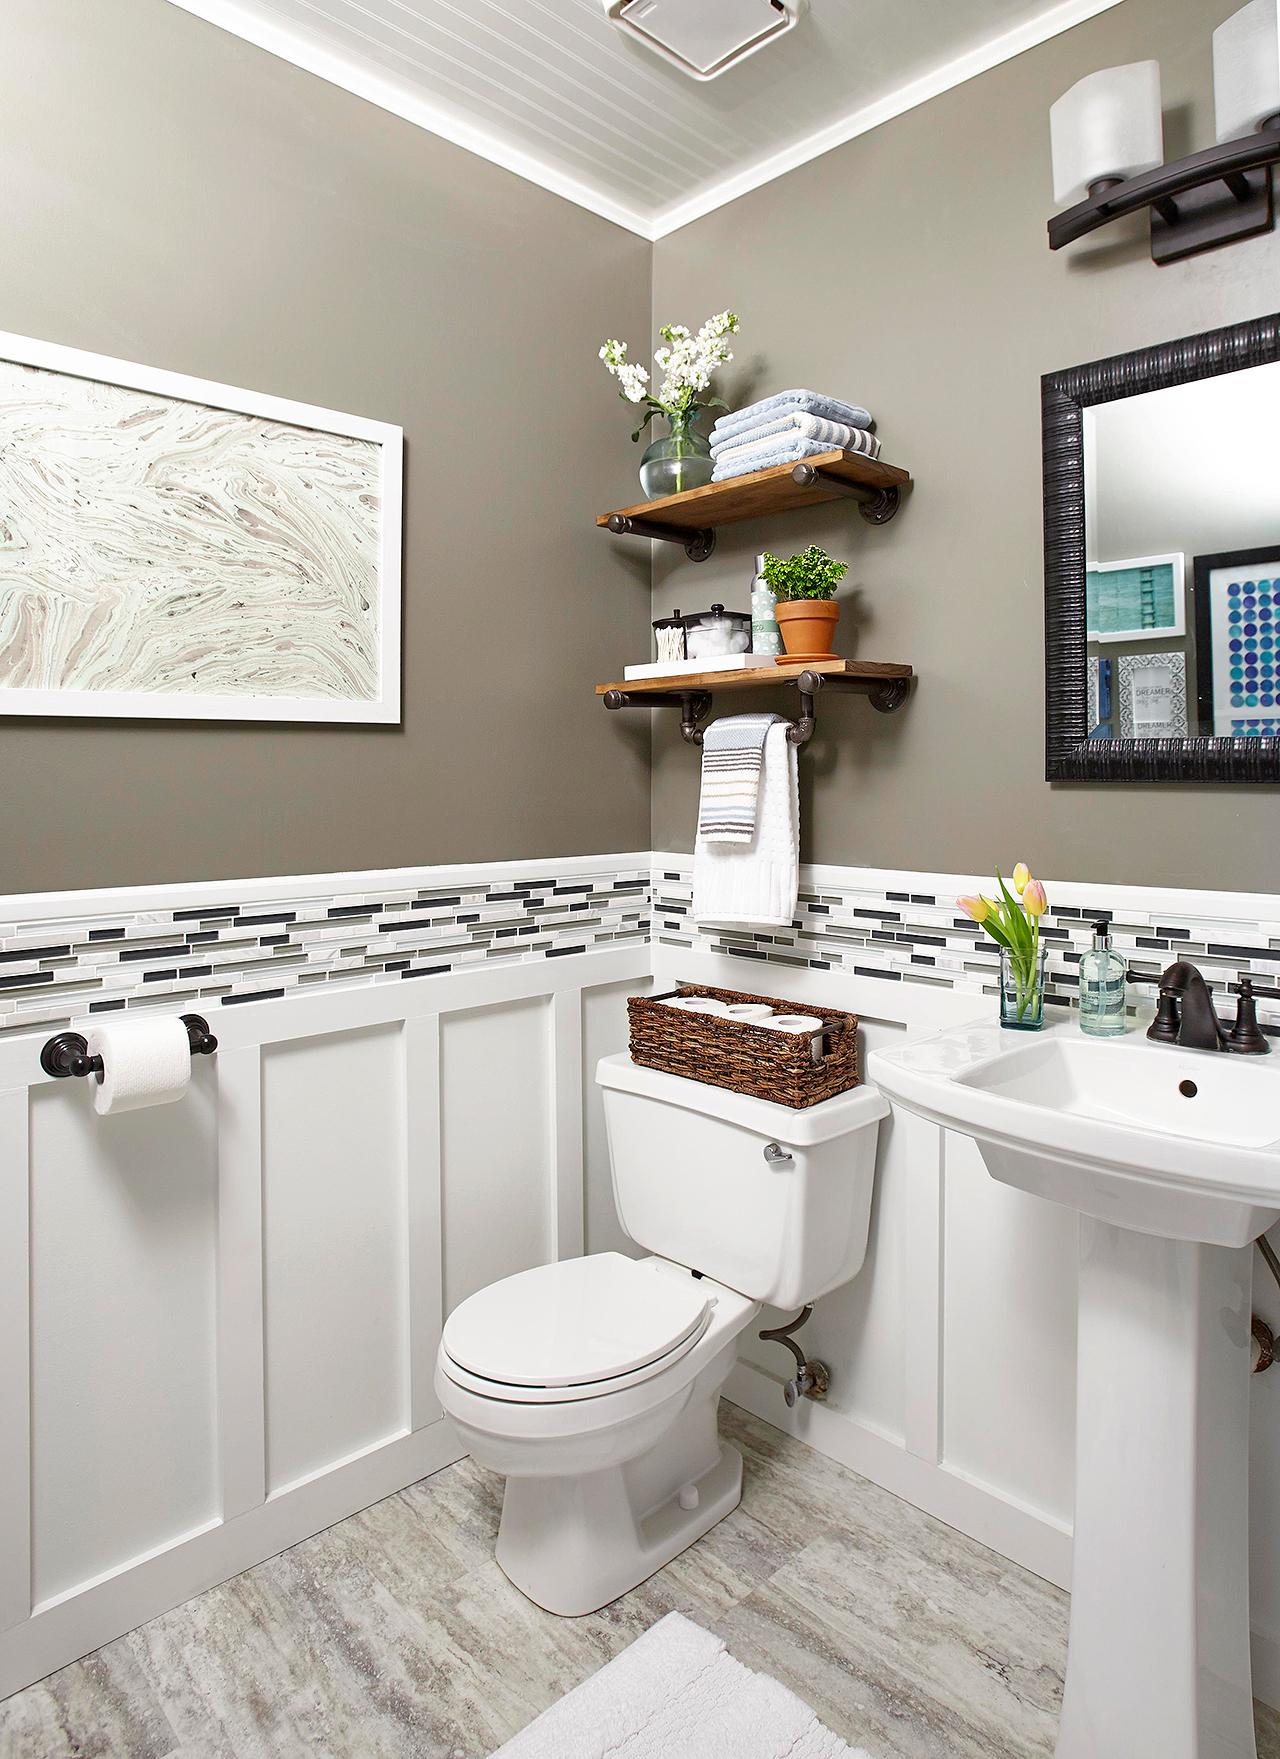 Lisez notre article pour savoir comment réparer les wc bouchés.